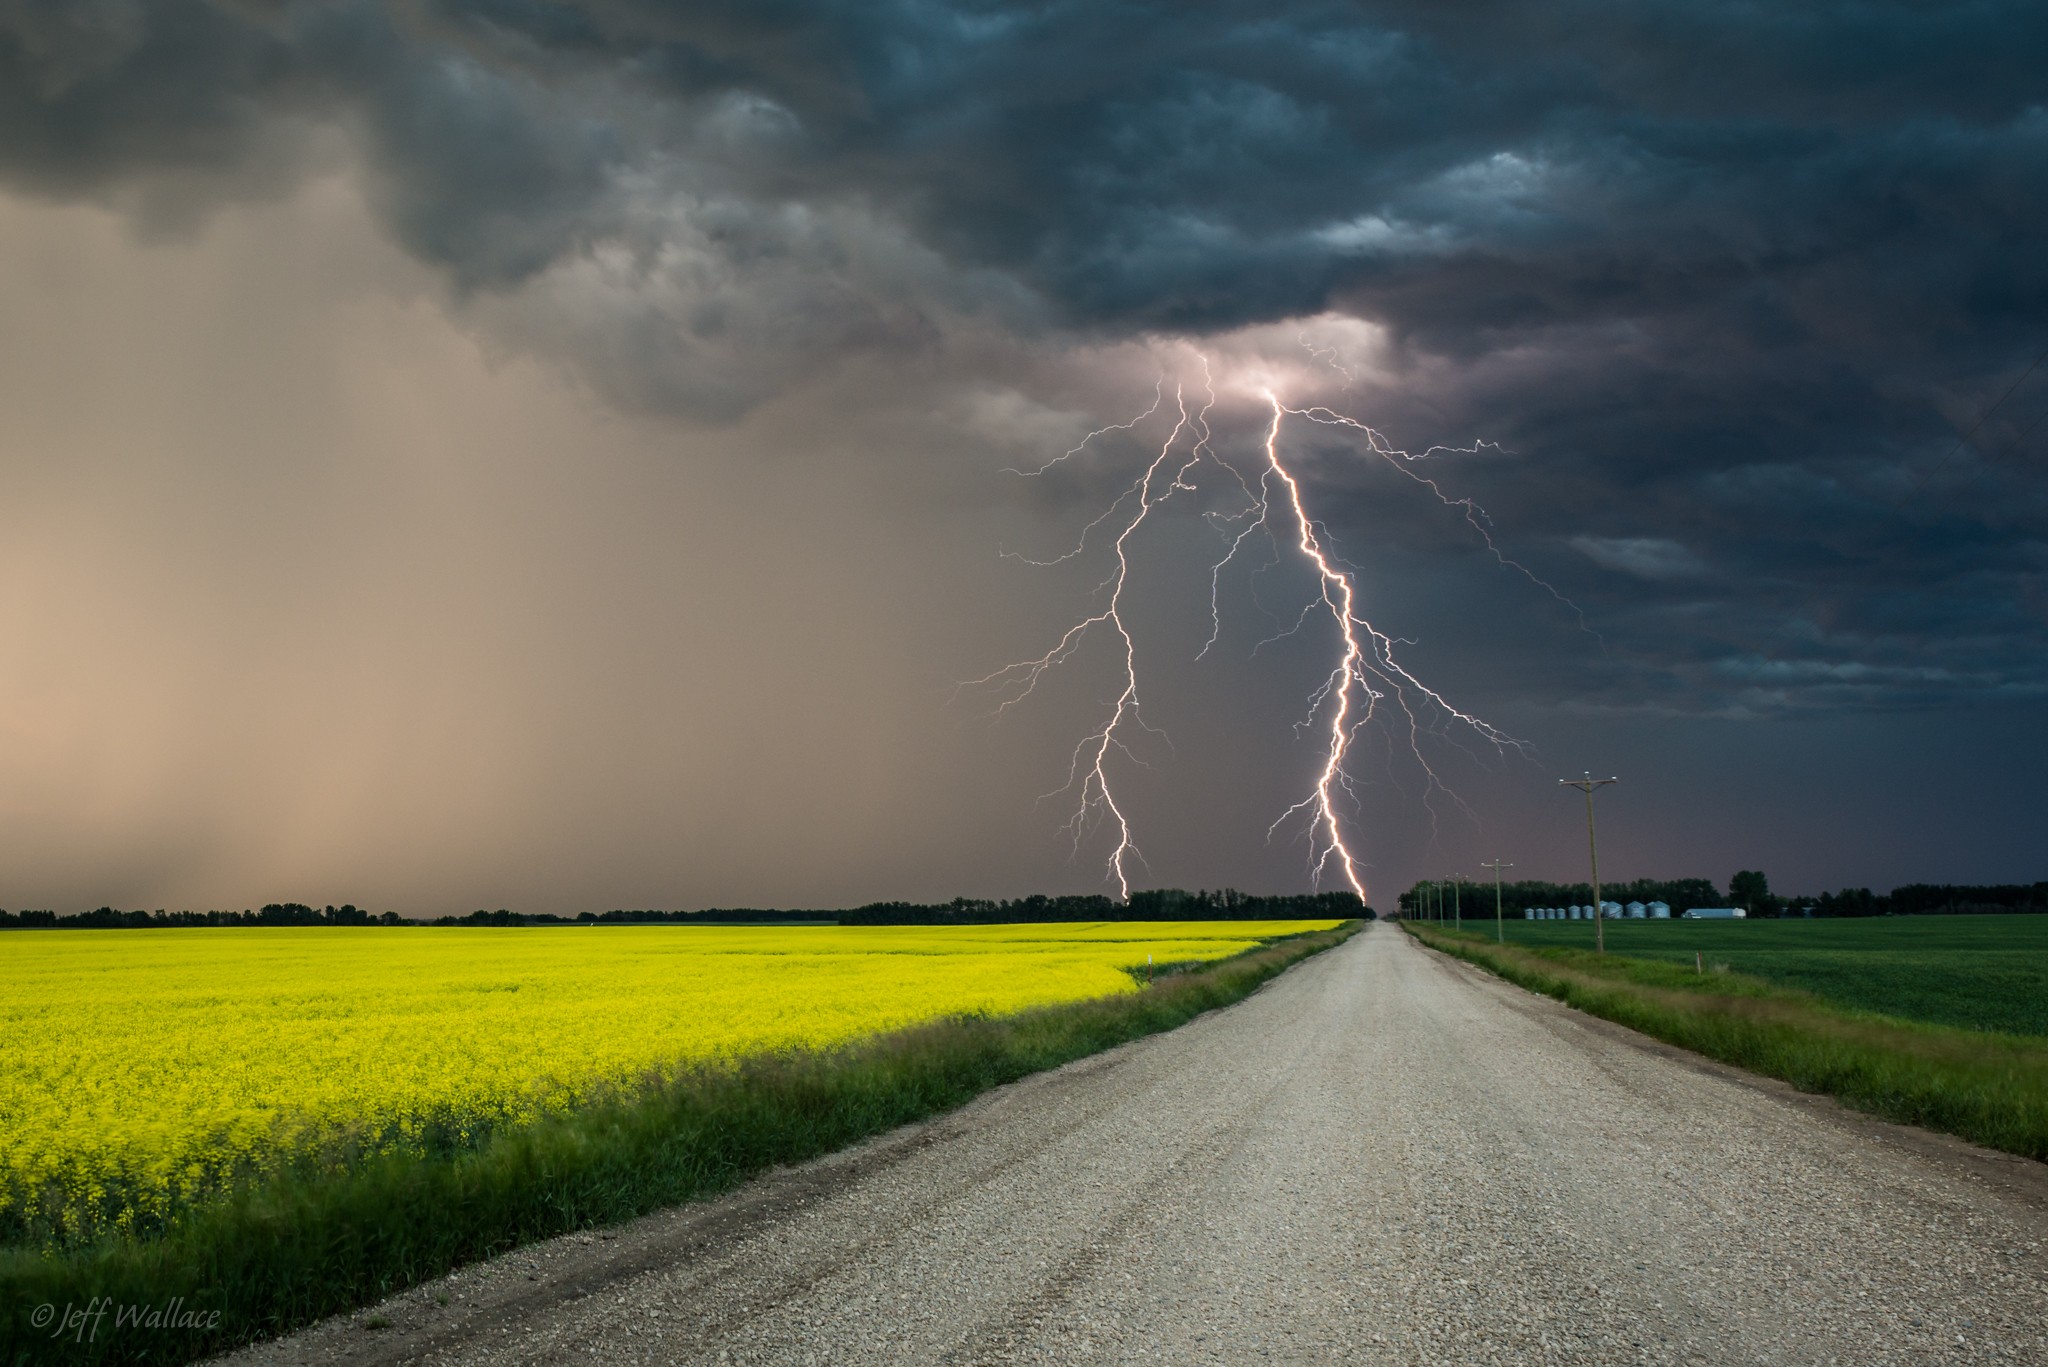 General 2048x1367 storm road field lightning landscape sky watermarked